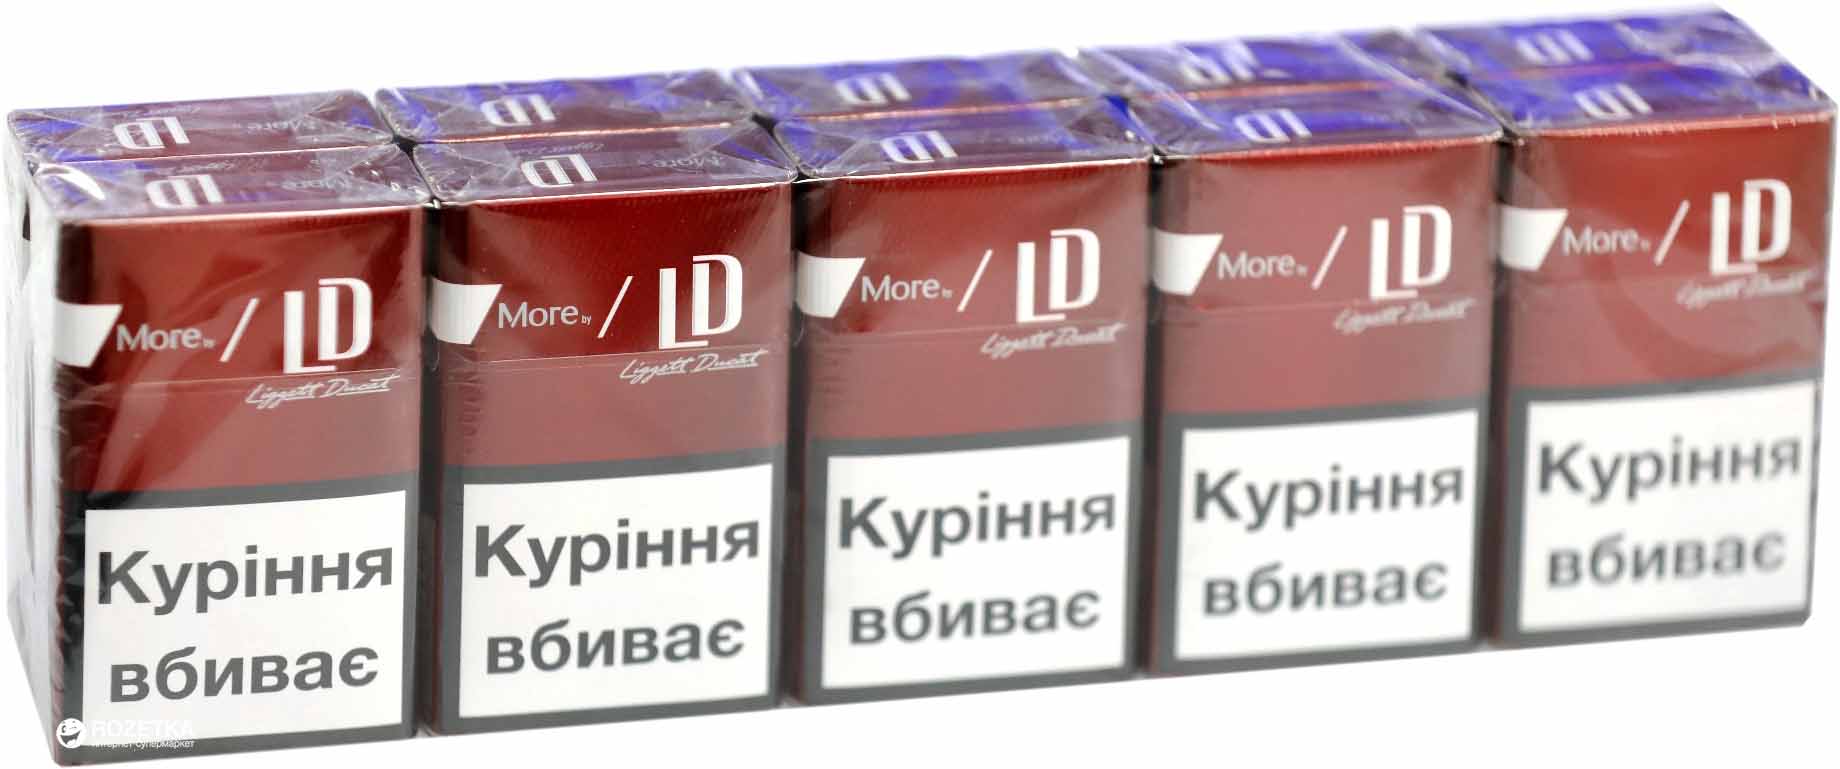 Сигаретные пачки СССР (только РСФСР) и России до 2010 года на латинскую букву M